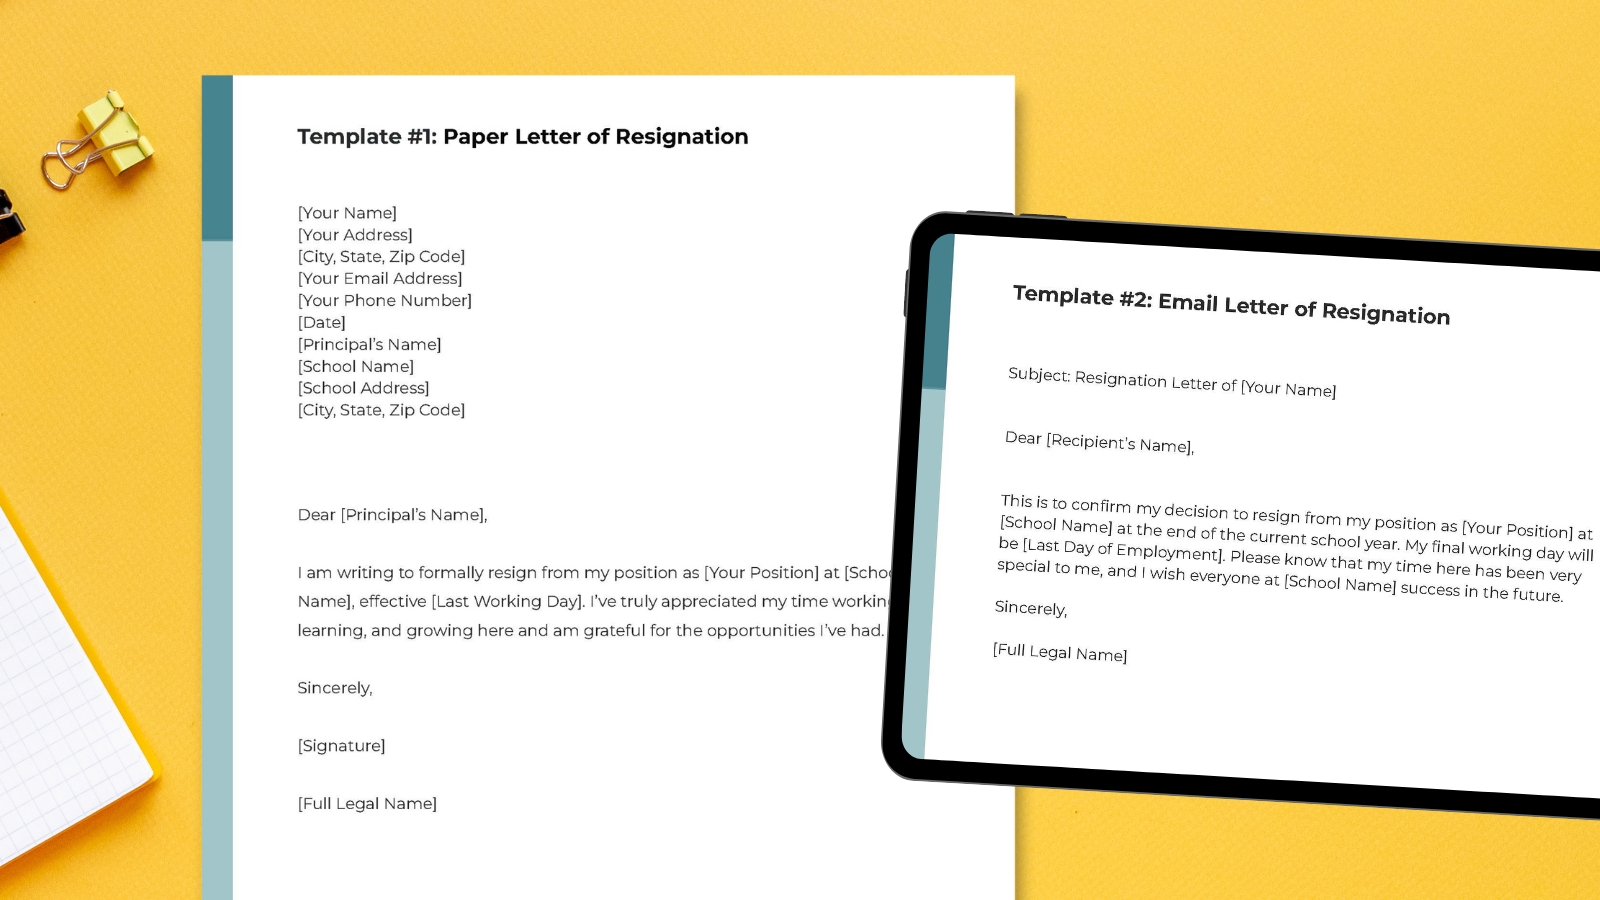 Teacher resignation letter on desk and on tablet.